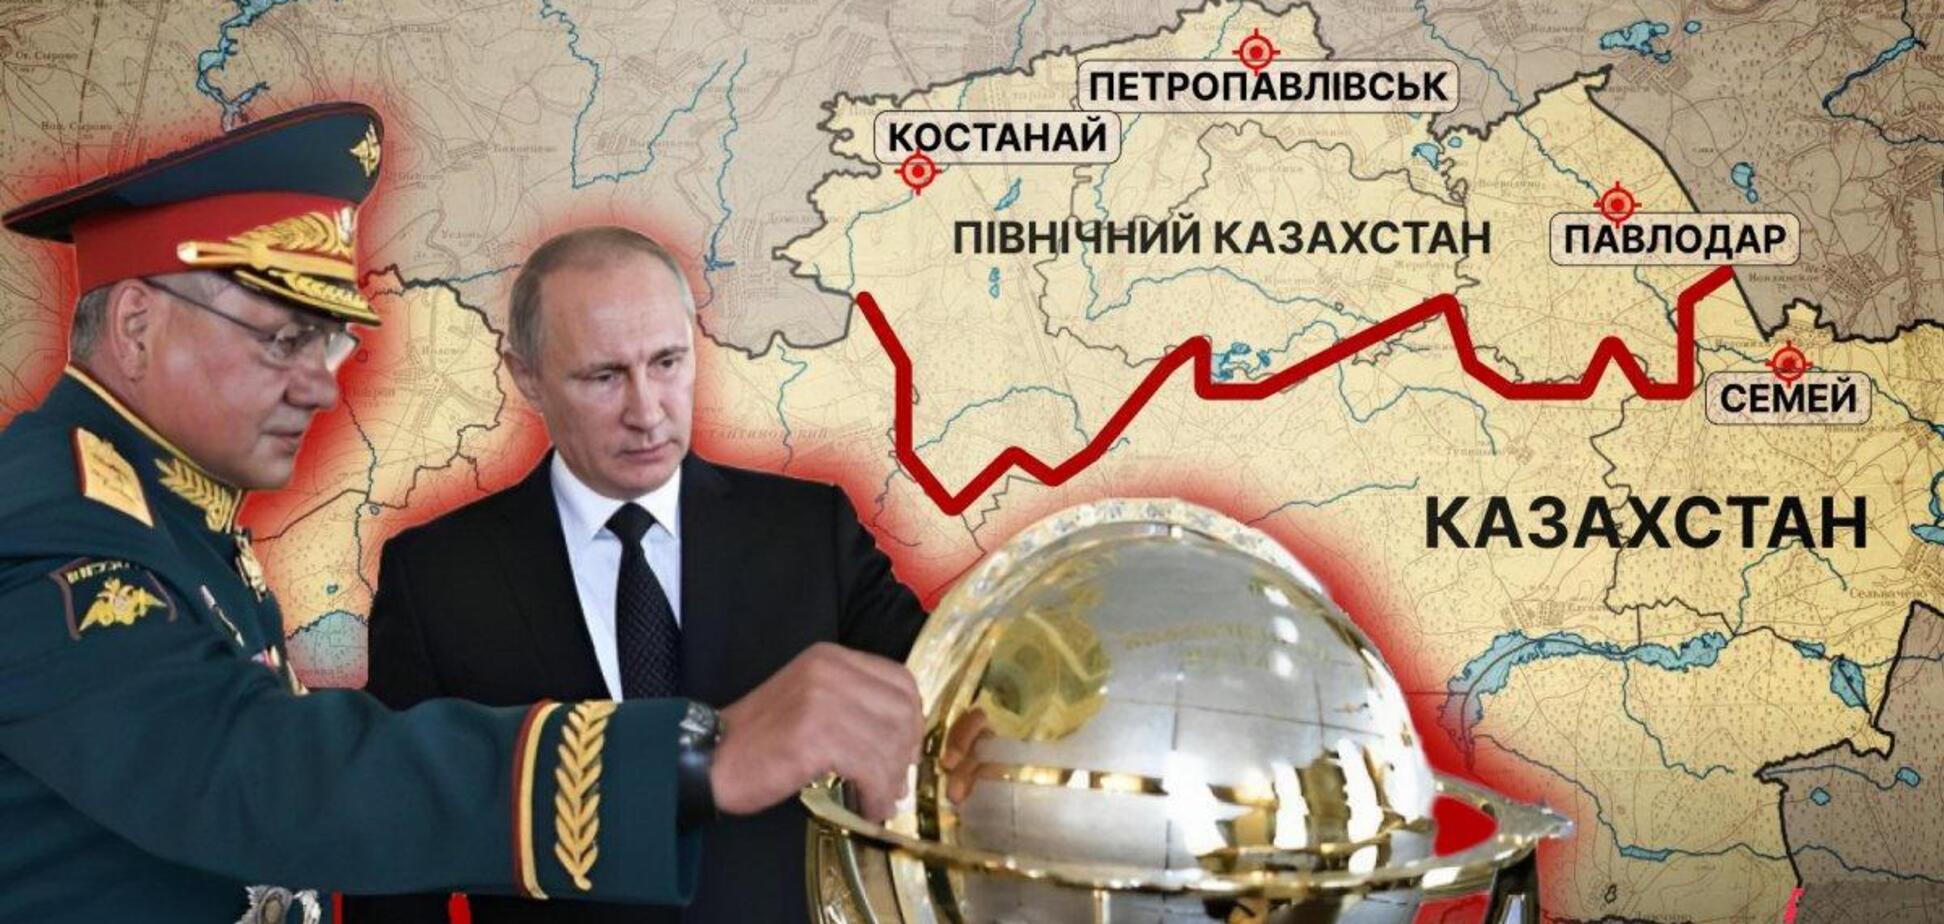 Казахстан – следующий? В сеть 'слили' аудиозапись еще об одной возможной жертве Путина